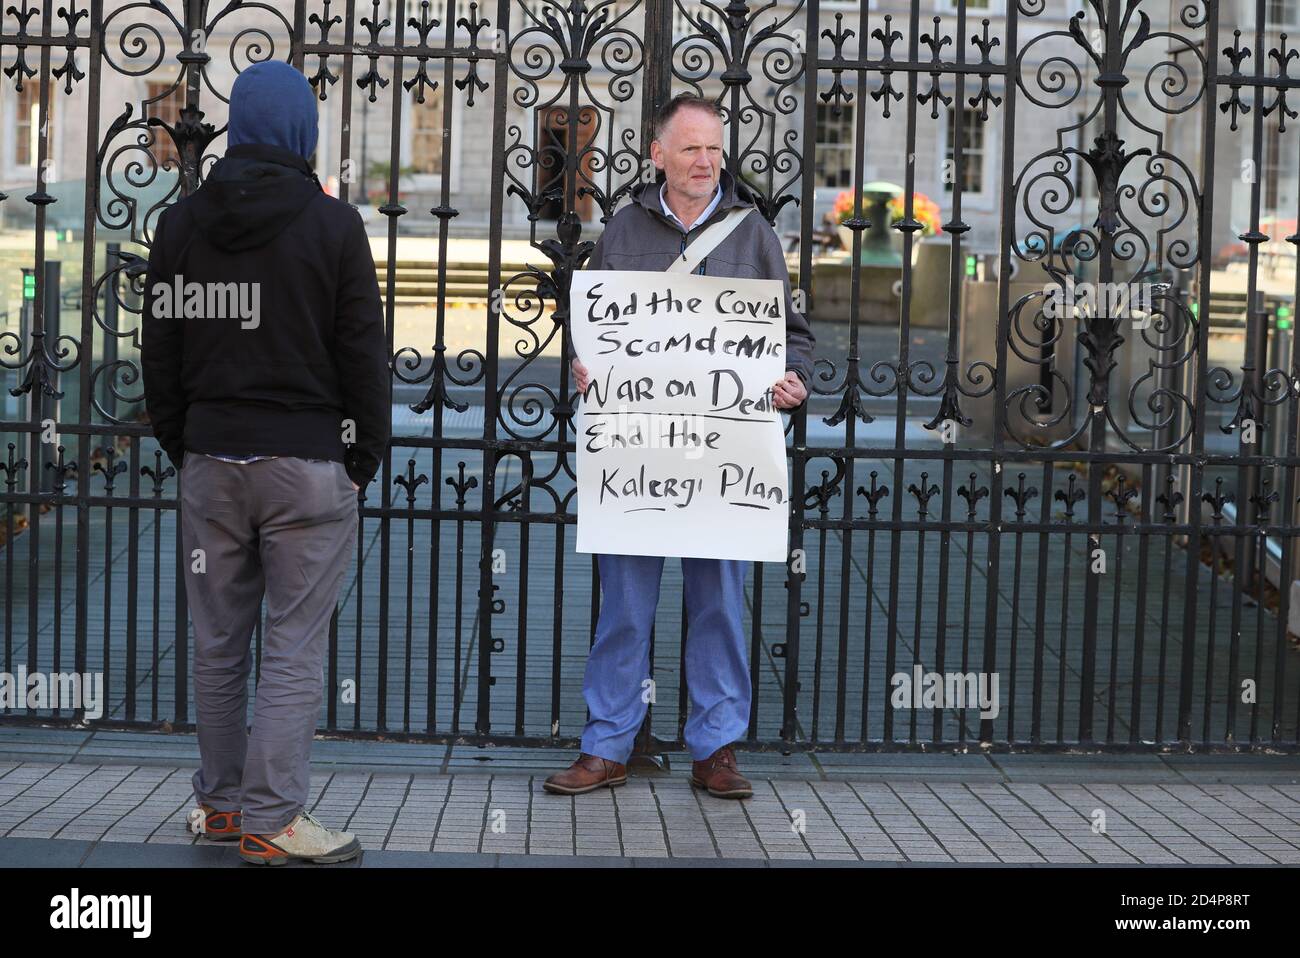 Un homme qui participe à une manifestation anti-verrouillage à l'extérieur de Leinster House, Dublin, alors que l'Irlande continue d'être dans une écluse nationale de niveau 3 du coronavirus. Banque D'Images